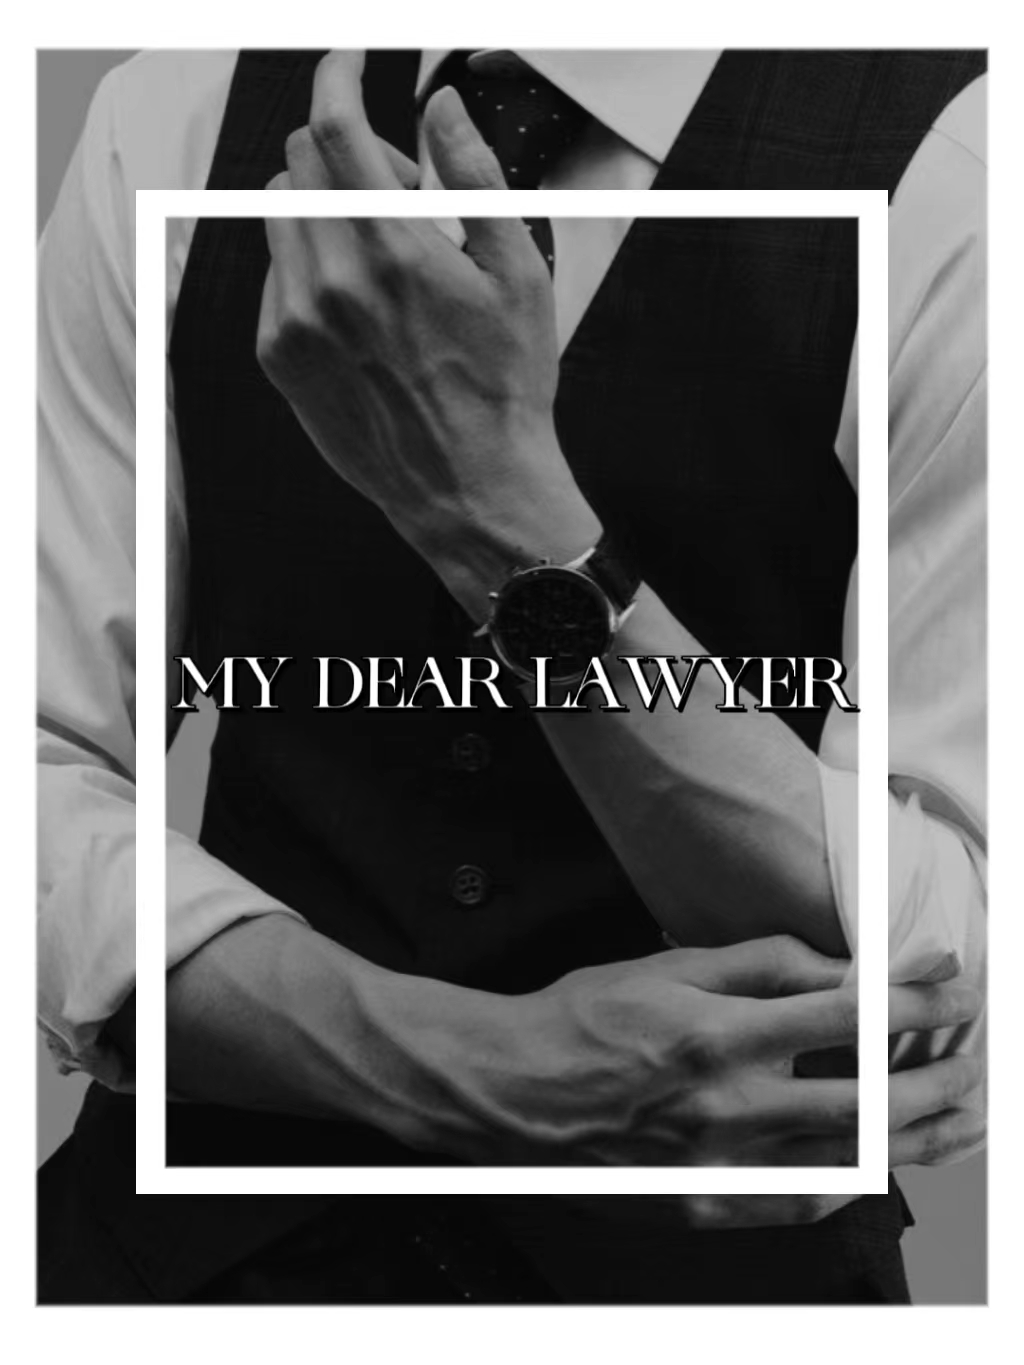 My dear lawyer